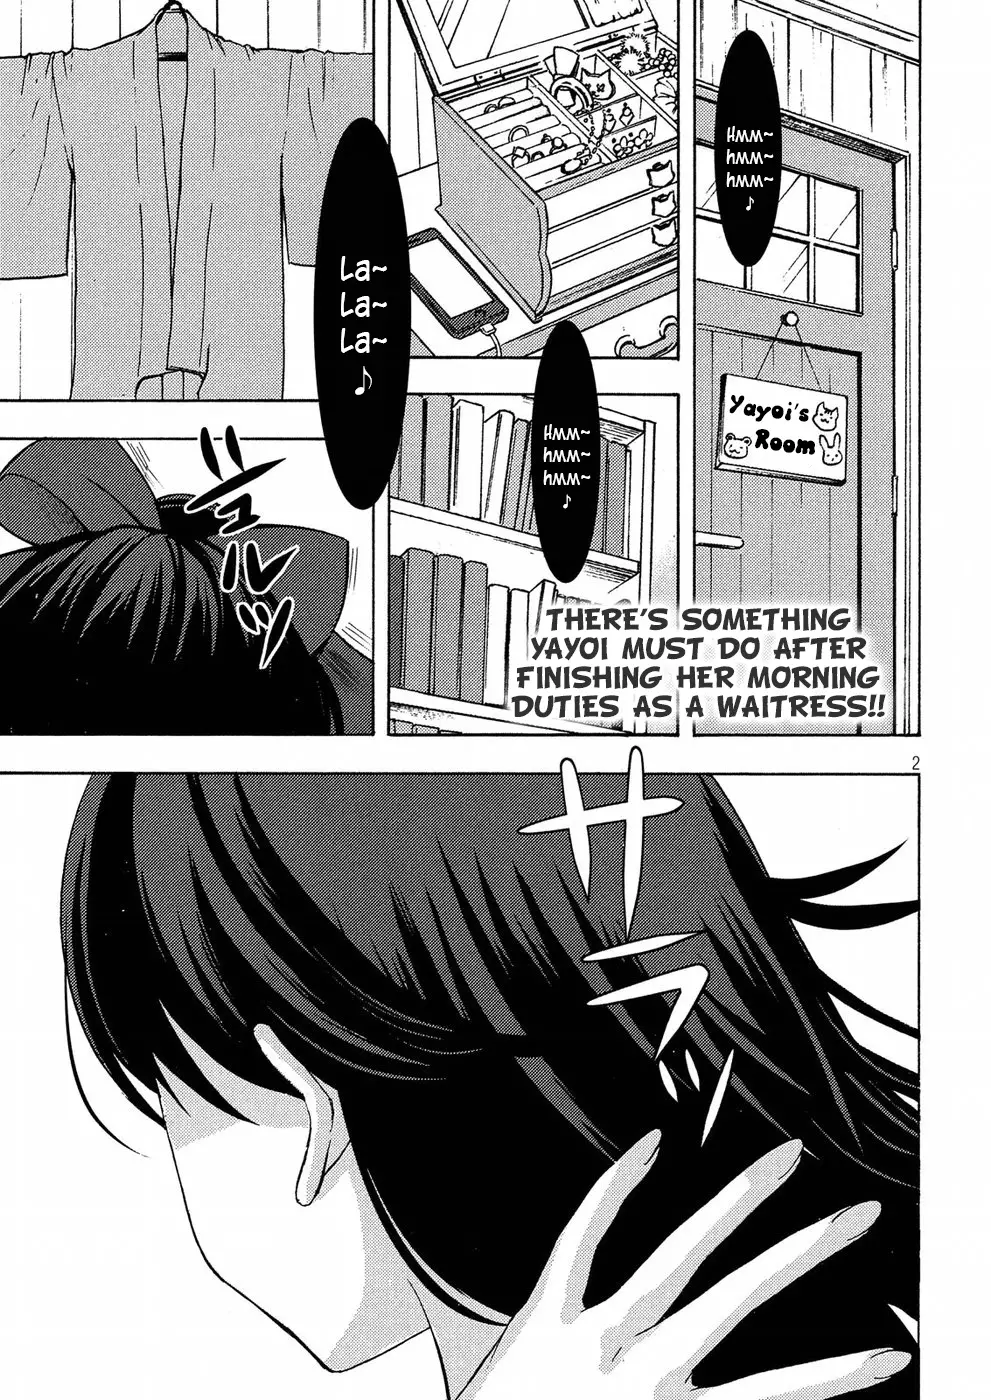 Watari-Kun No Xx Ga Houkai Sunzen - 45 page 2-f92dbca9